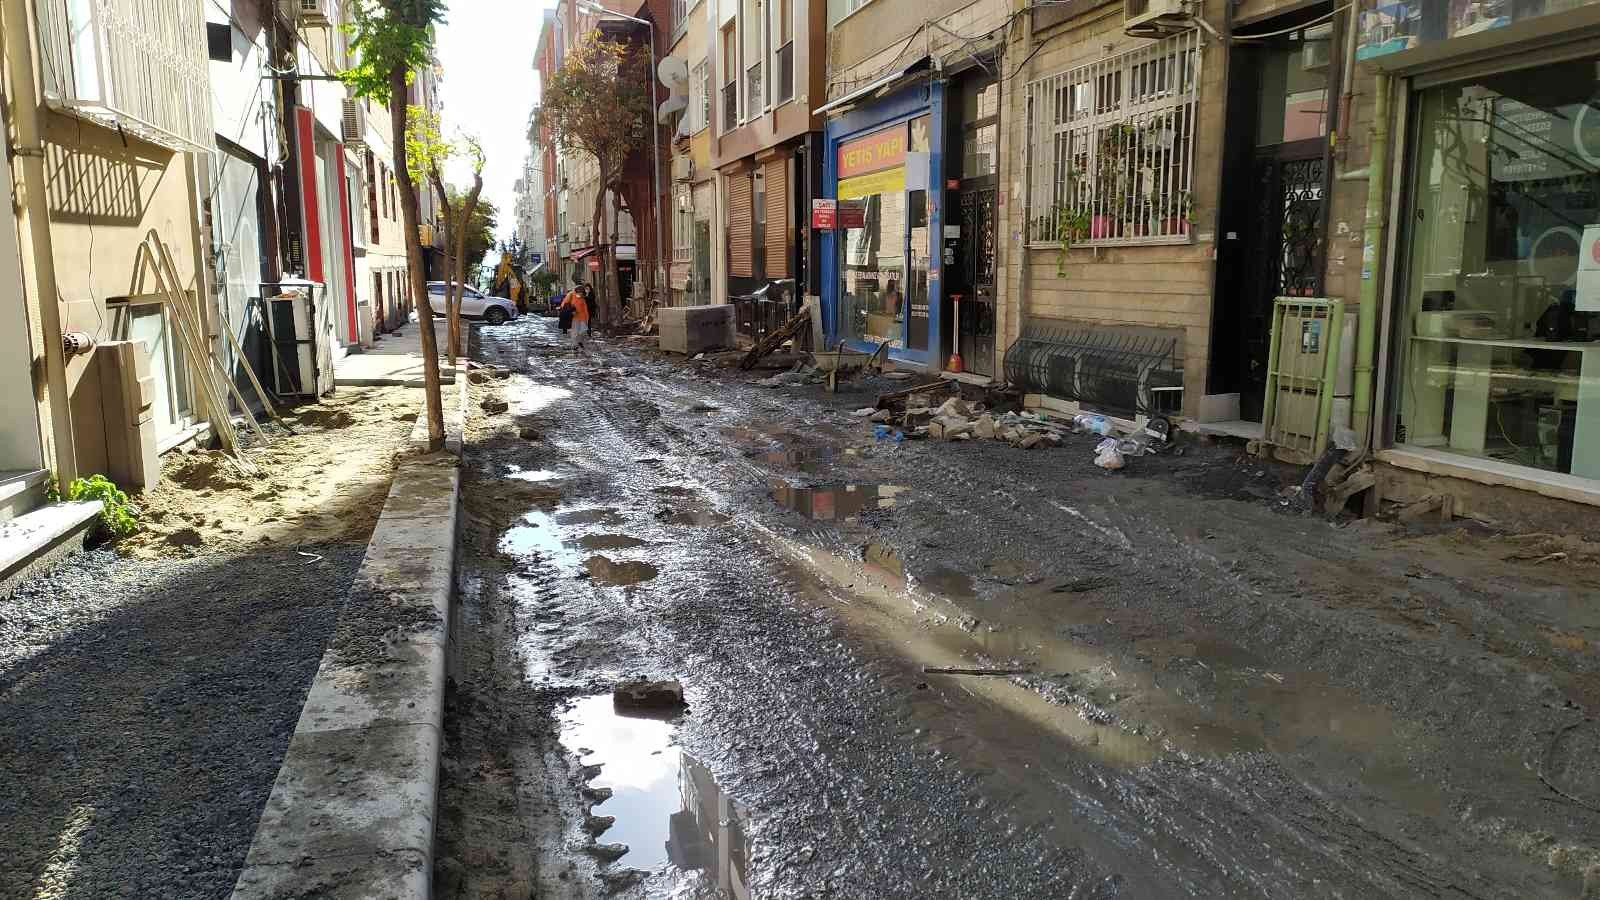 Bakırköy’de altyapı çalışmasında cadde çamur deryasına döndü #istanbul